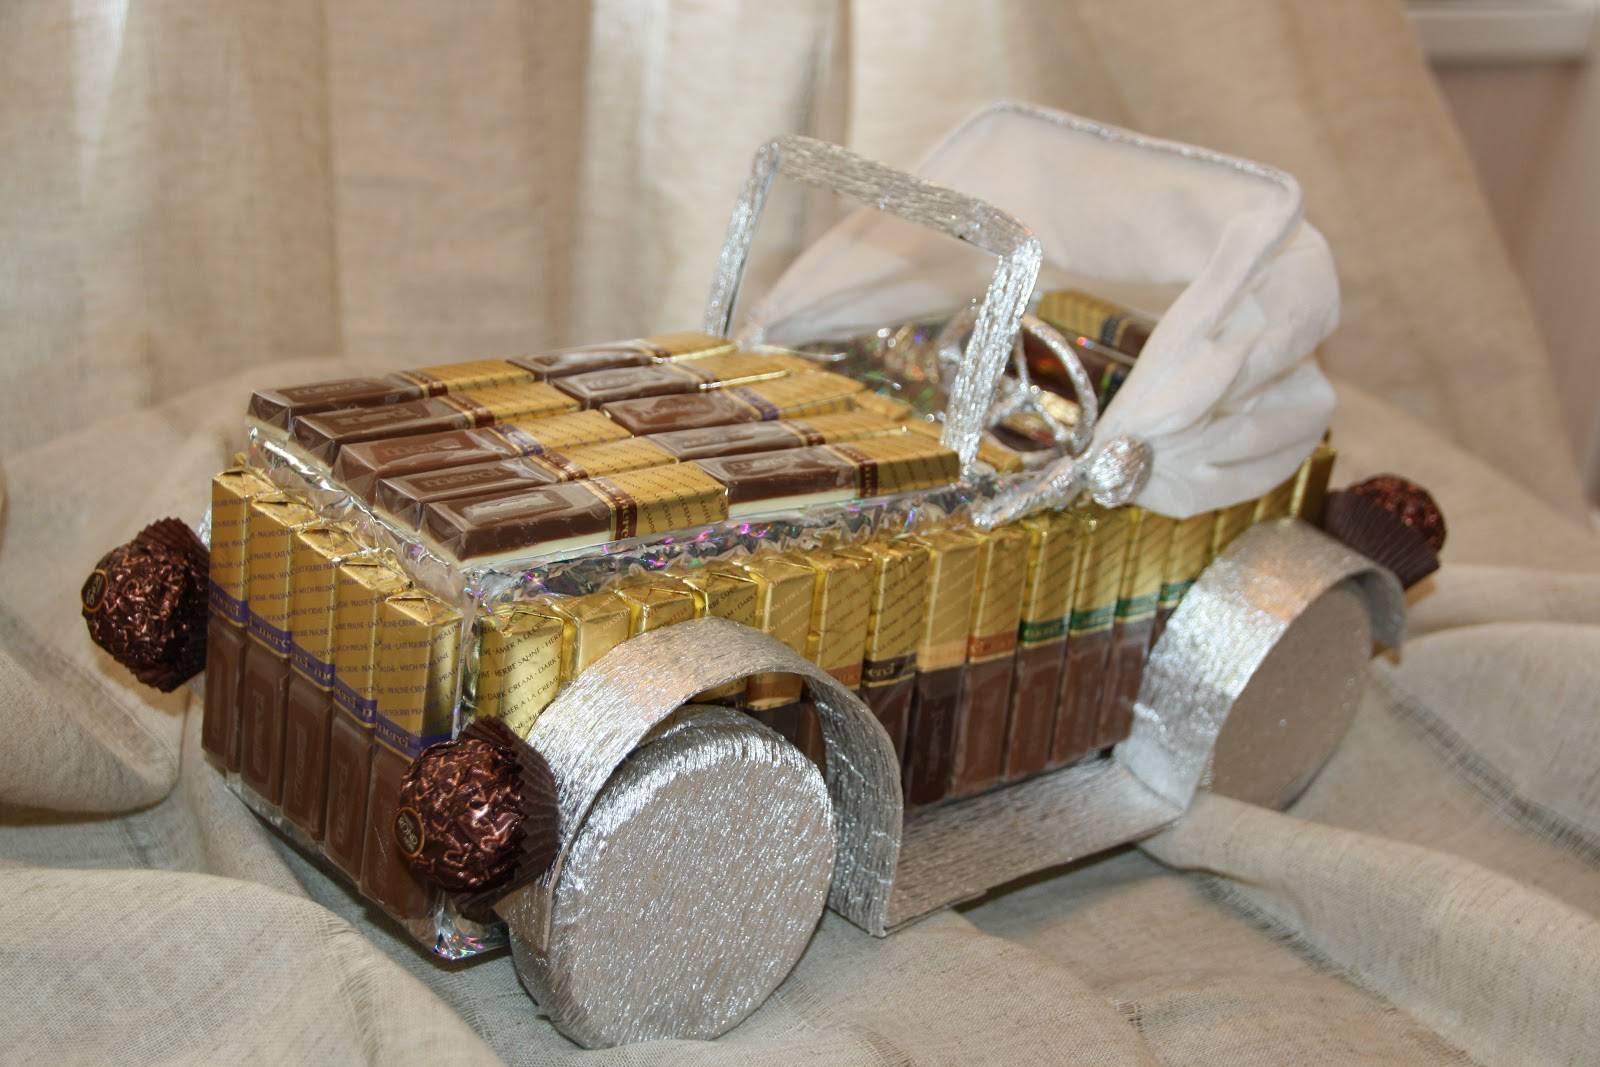 Машина из конфет. мастер-класс свит-дизайн день рождения моделирование конструирование сладкая машина мастеркласс бумага картон коробки пенопласт ткань